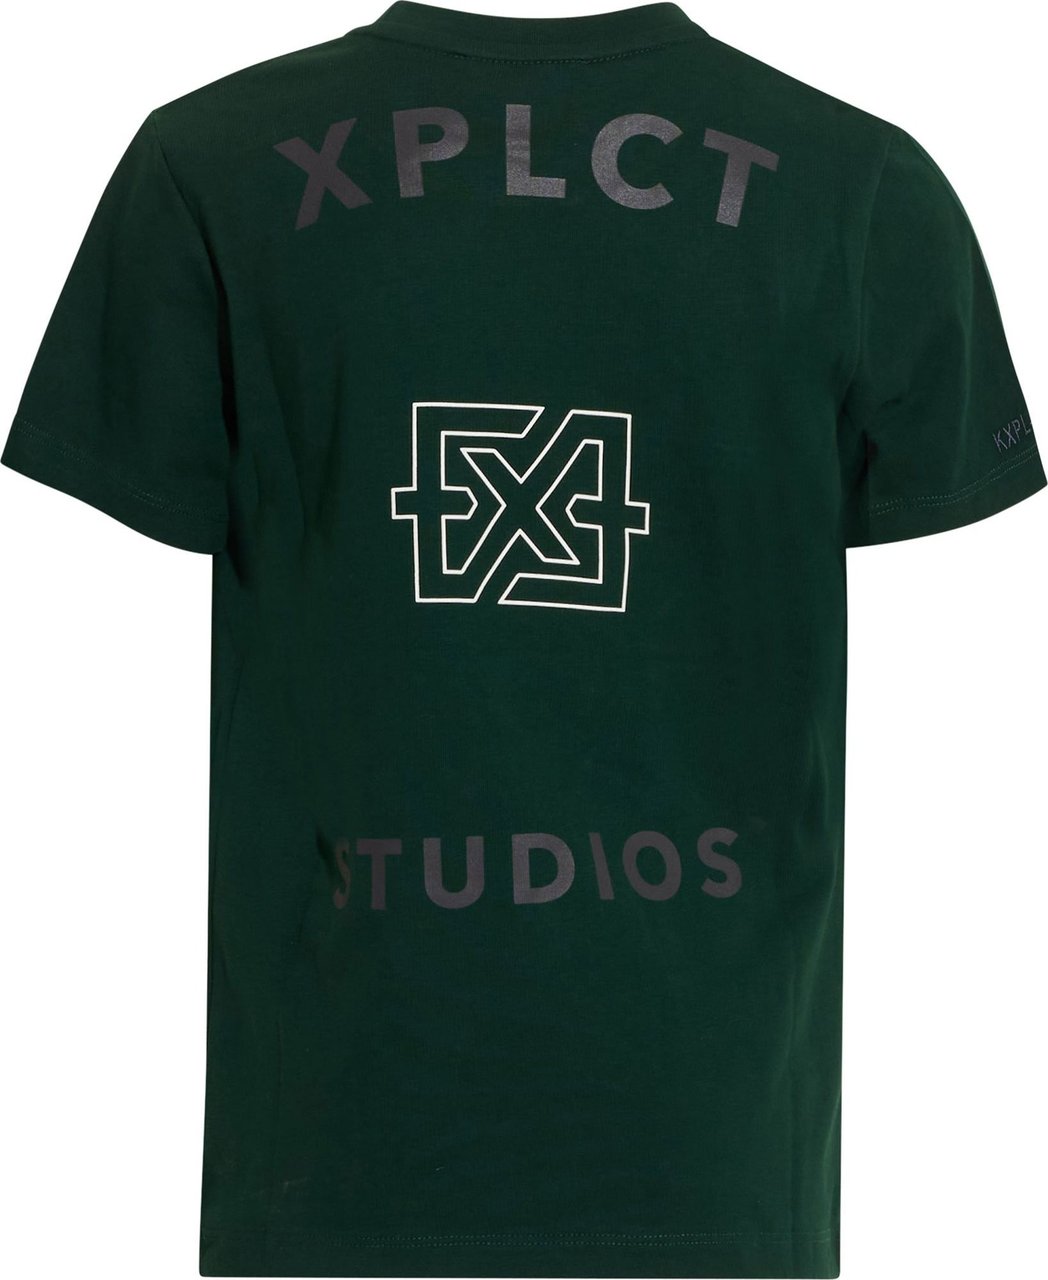 XPLCT Studios Brand Tee Kids Green Groen